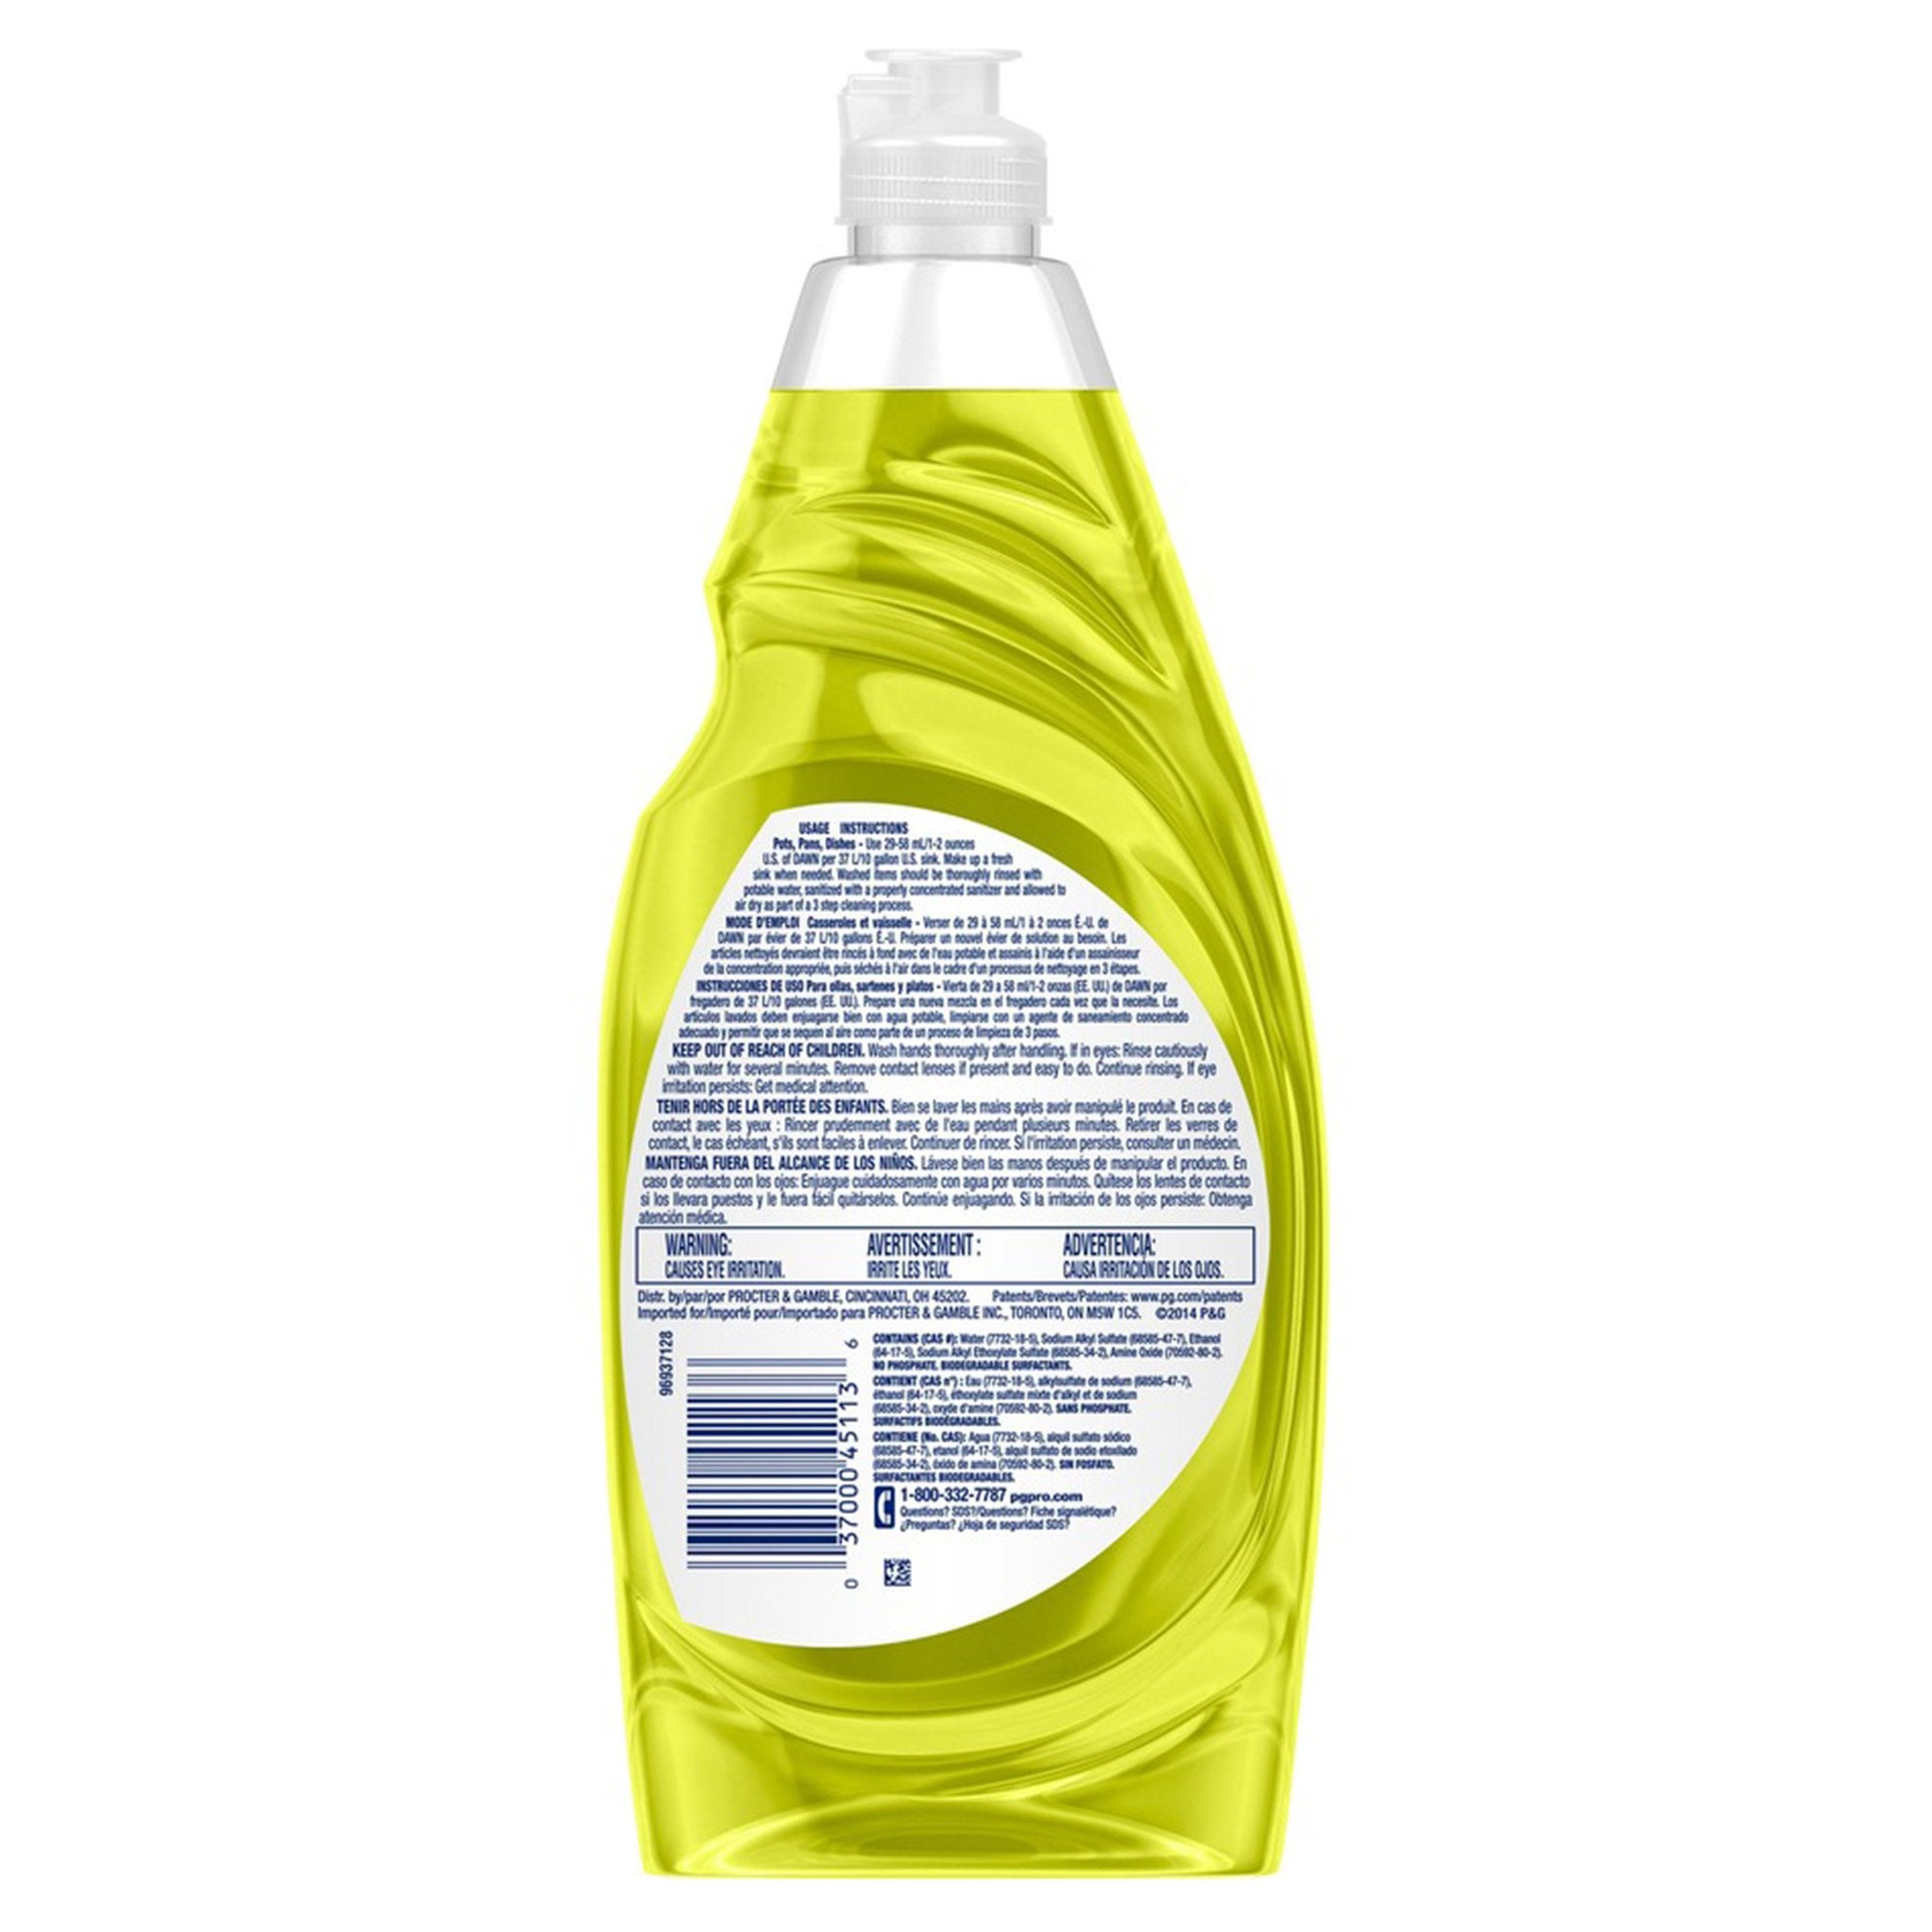 Dish Detergent Dawn Professional 38 oz. Bottle Liquid Lemon Scent